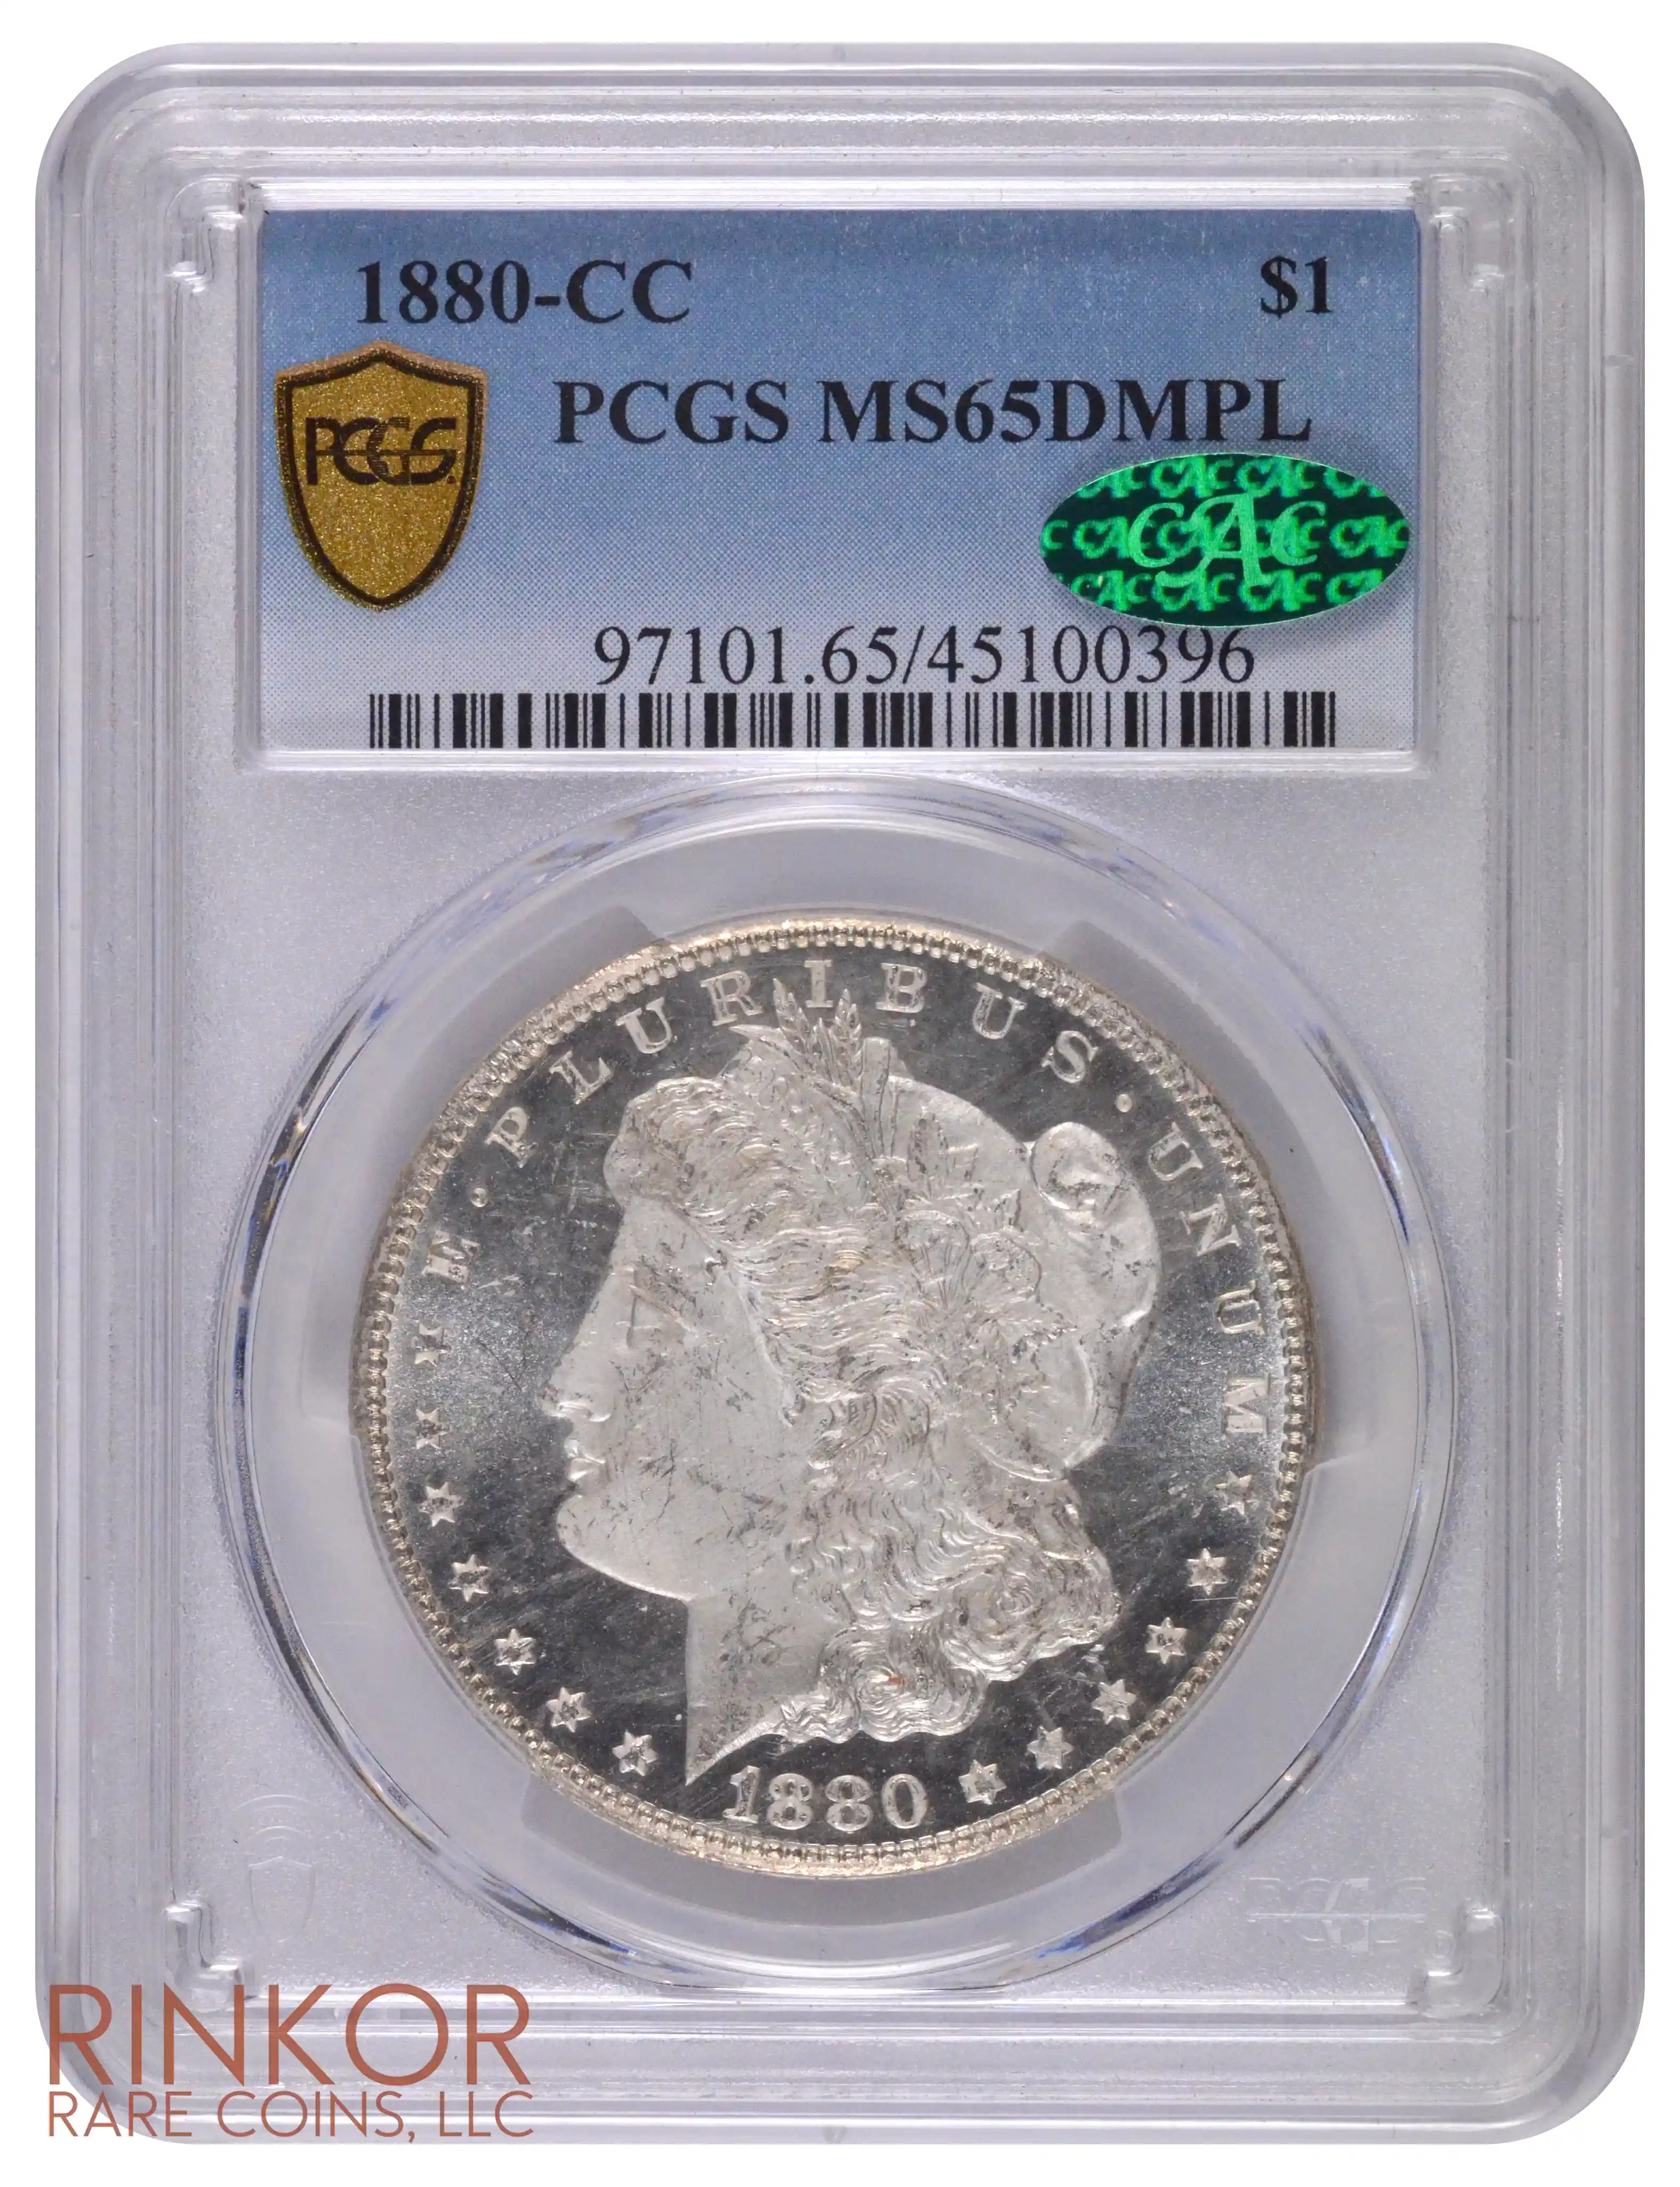 1880-CC $1 PCGS MS 65 DMPL CAC